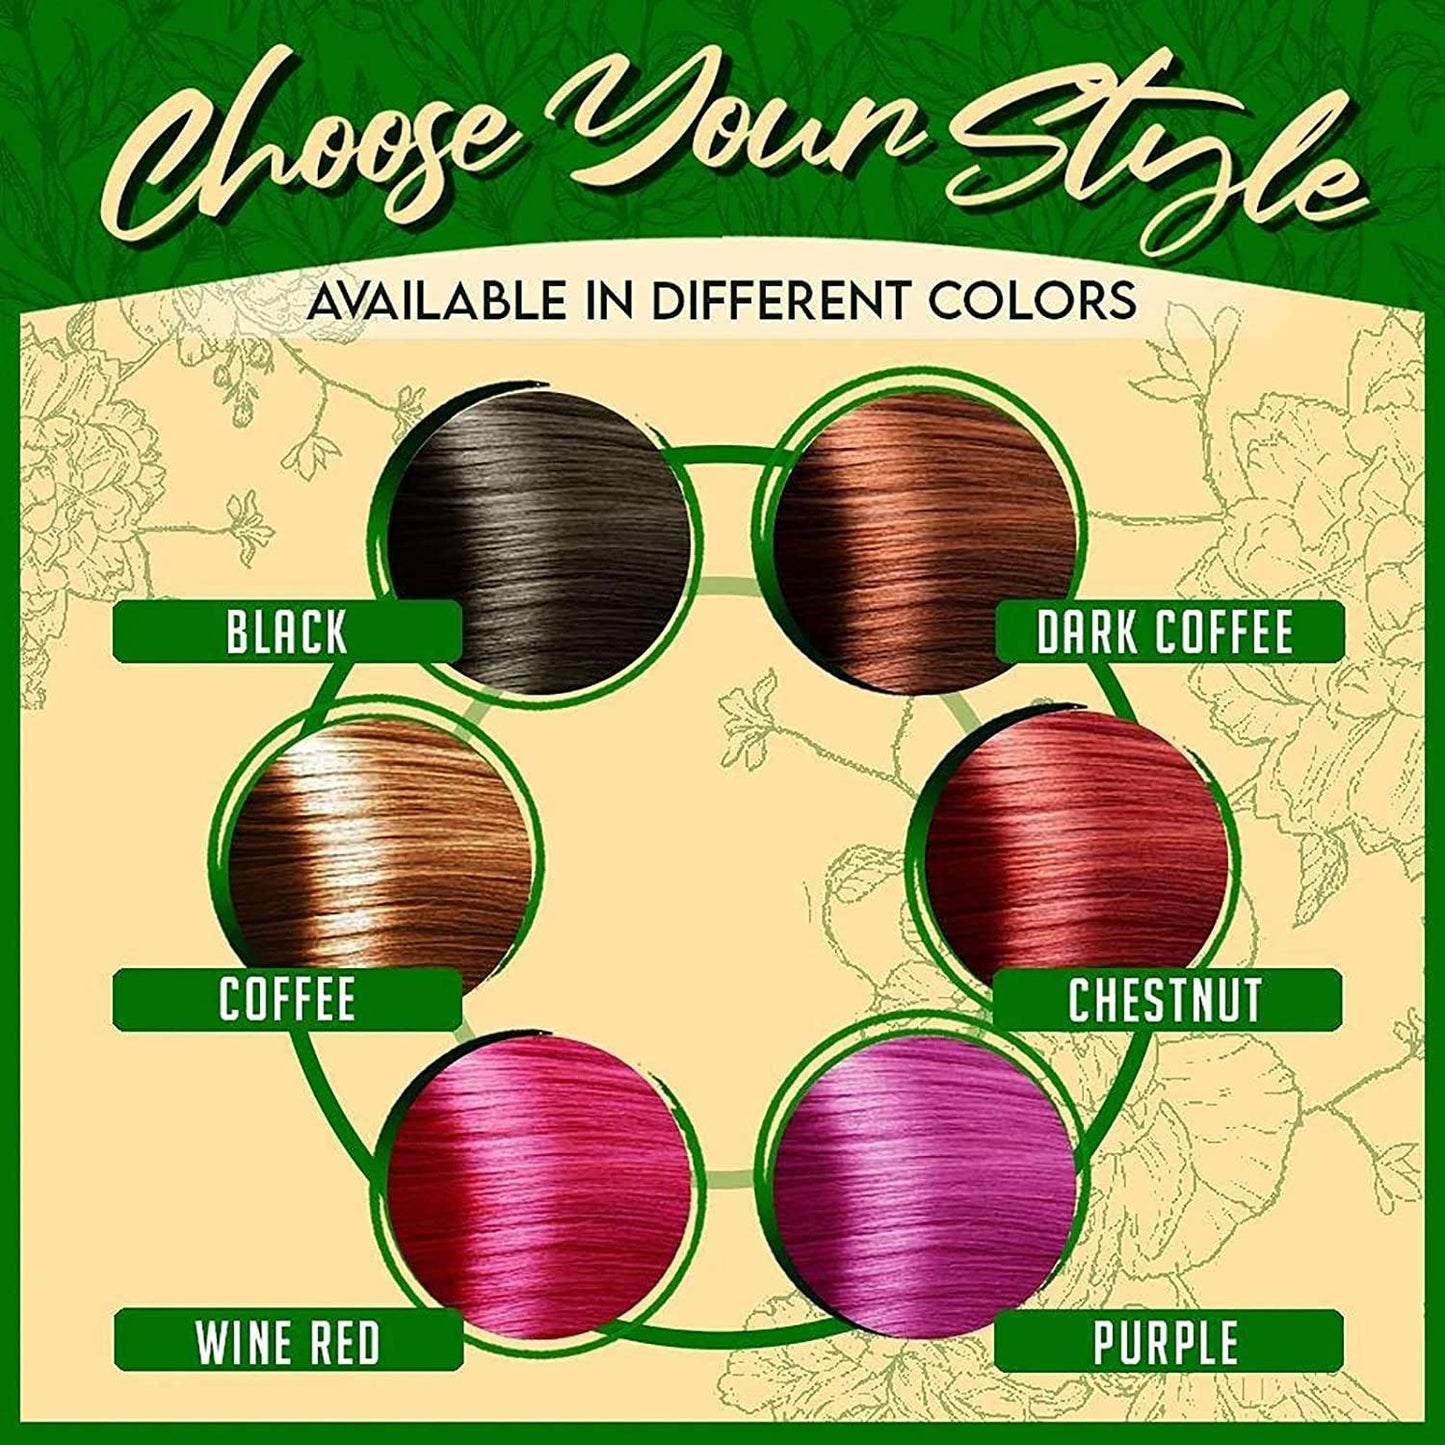 Purple Hair Color Shampoo 3 in 1 | 500ml / 16.9 Fl Oz | Herbal Ingredients | Instant 100% Grey Hair Coverage | AUGEAS Hair Color AUGEAS 